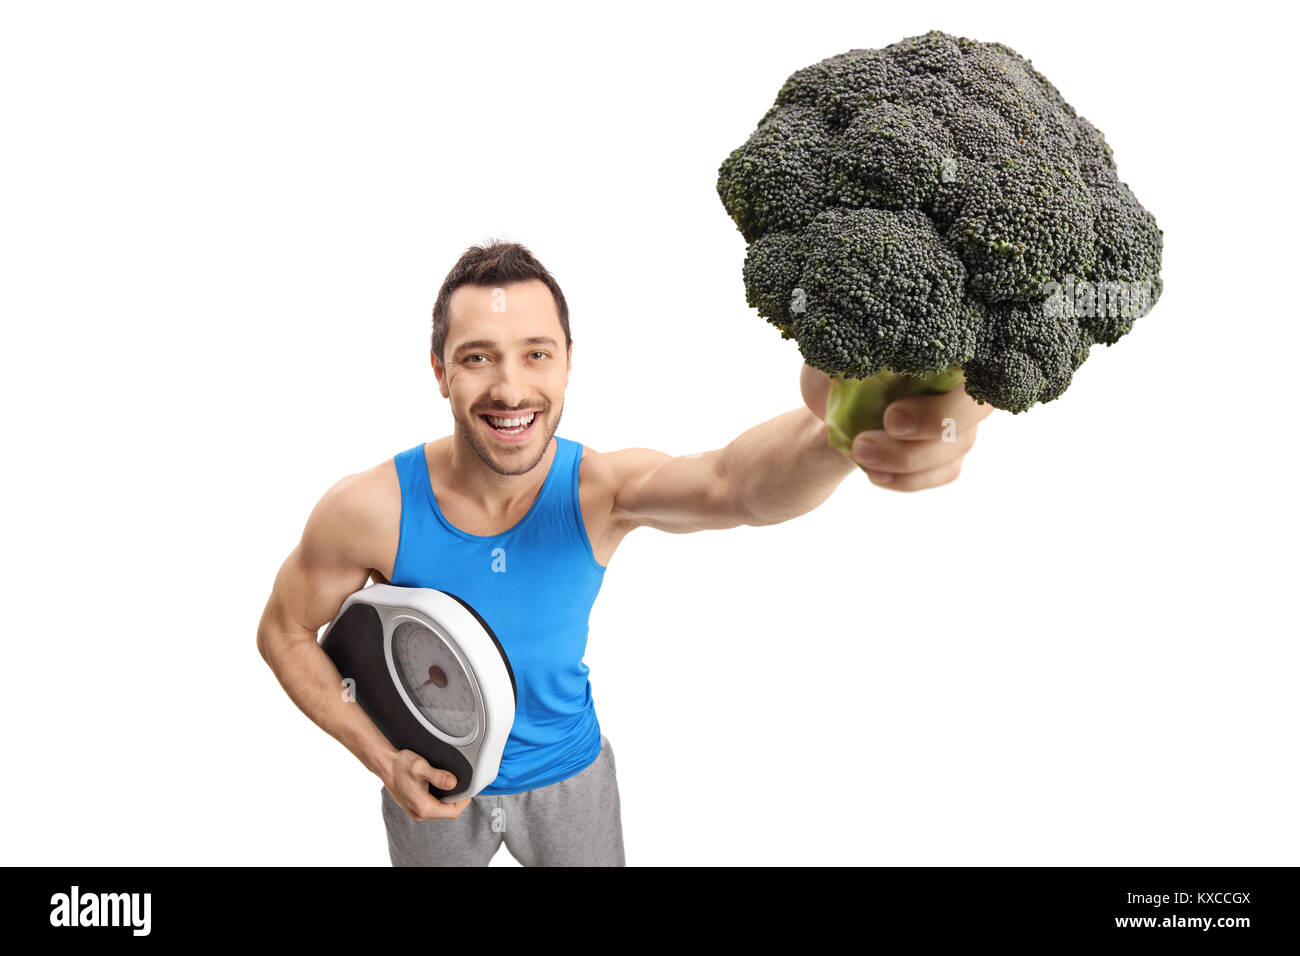 Athletischer Kerl Holding eine Waage und Brokkoli auf weißem Hintergrund Stockfoto